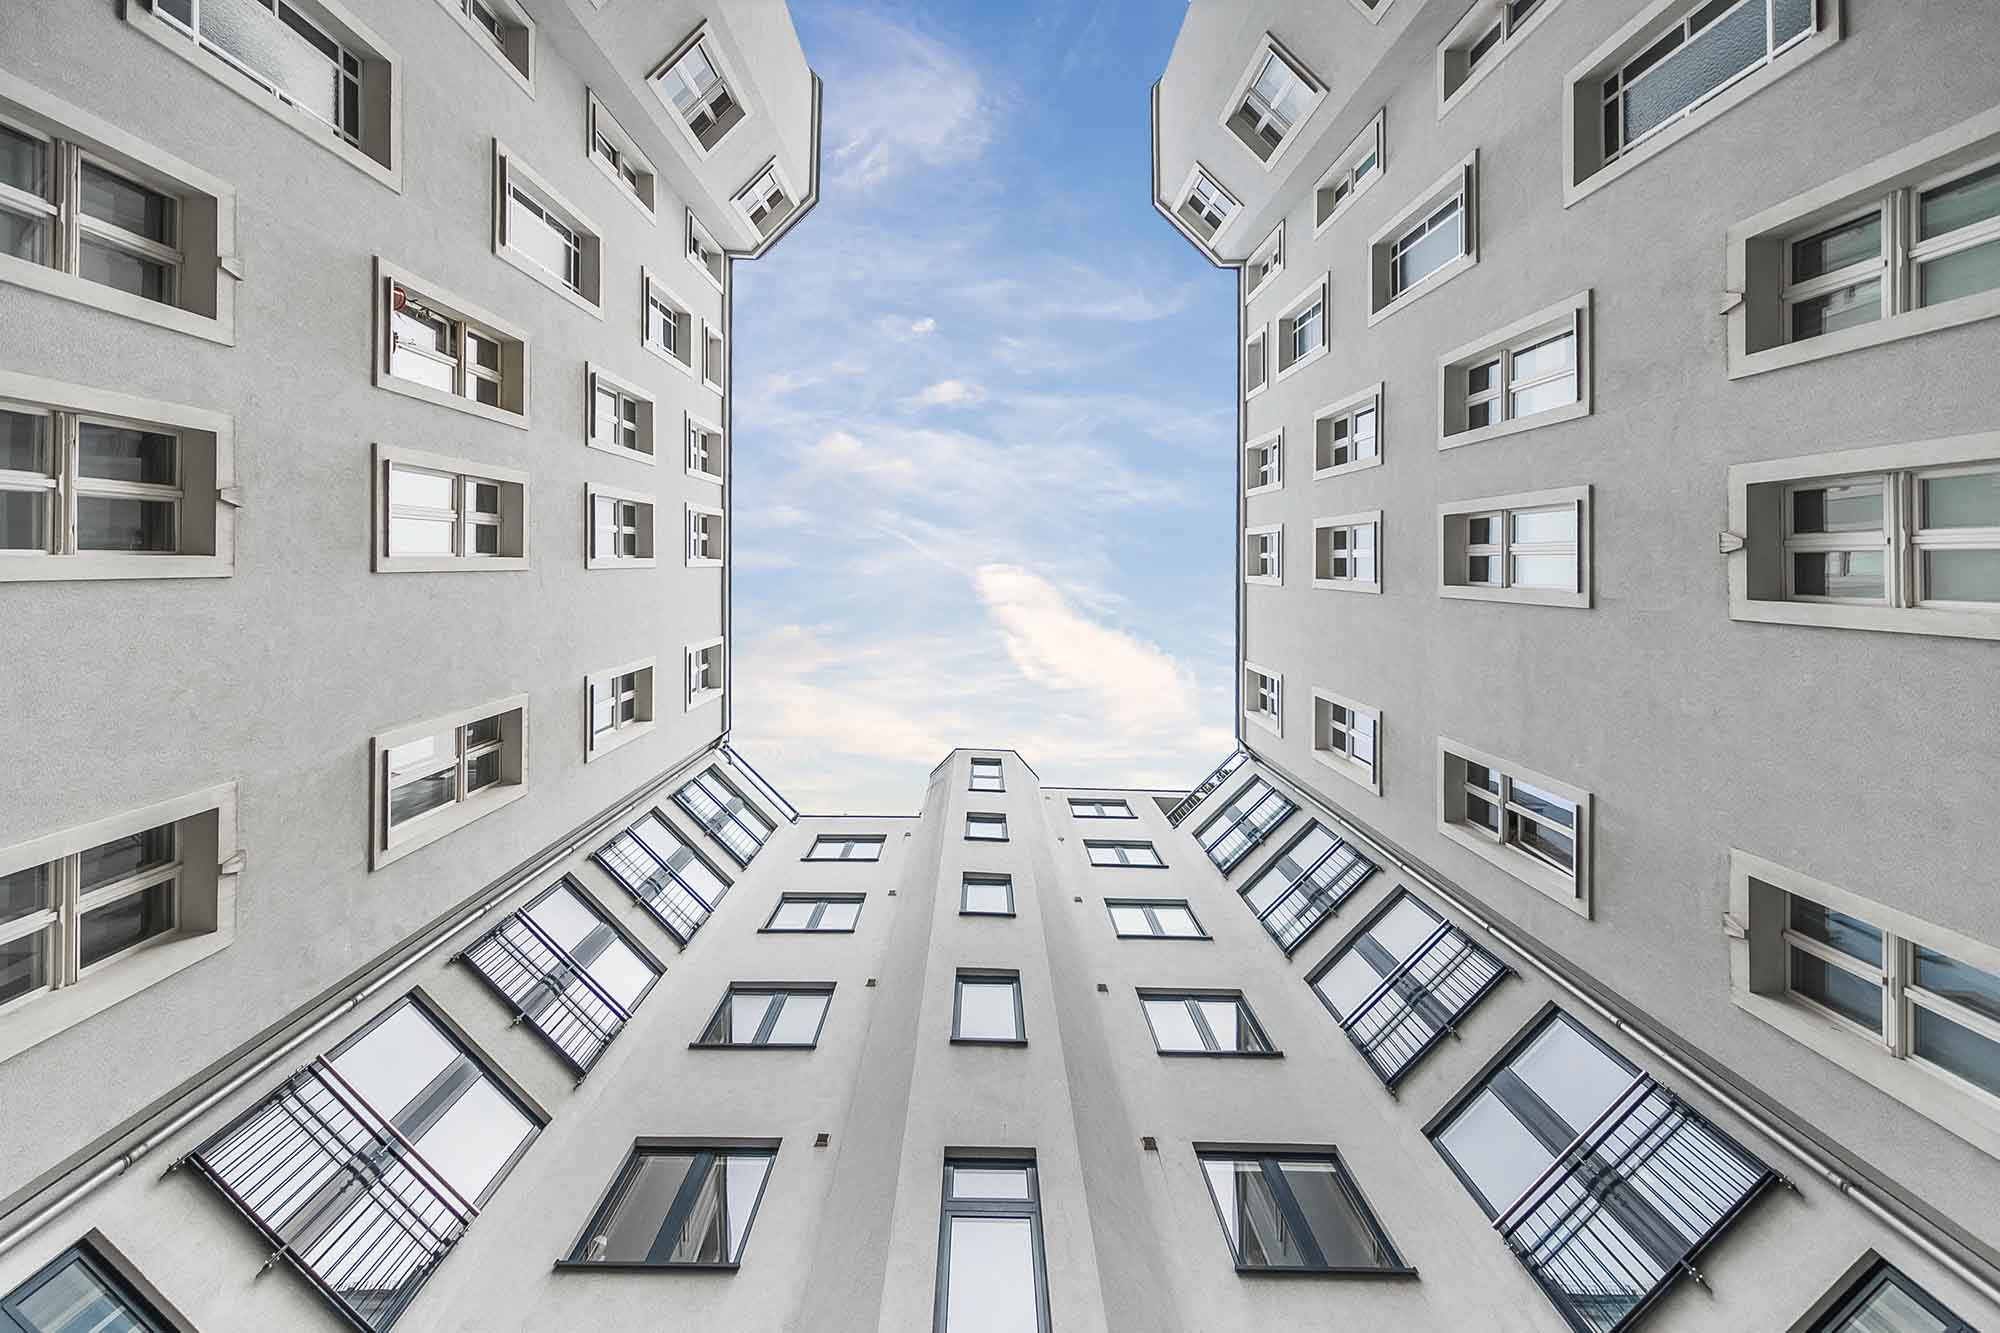 Immobilienfotografie der Außenfassade eines Neubaues